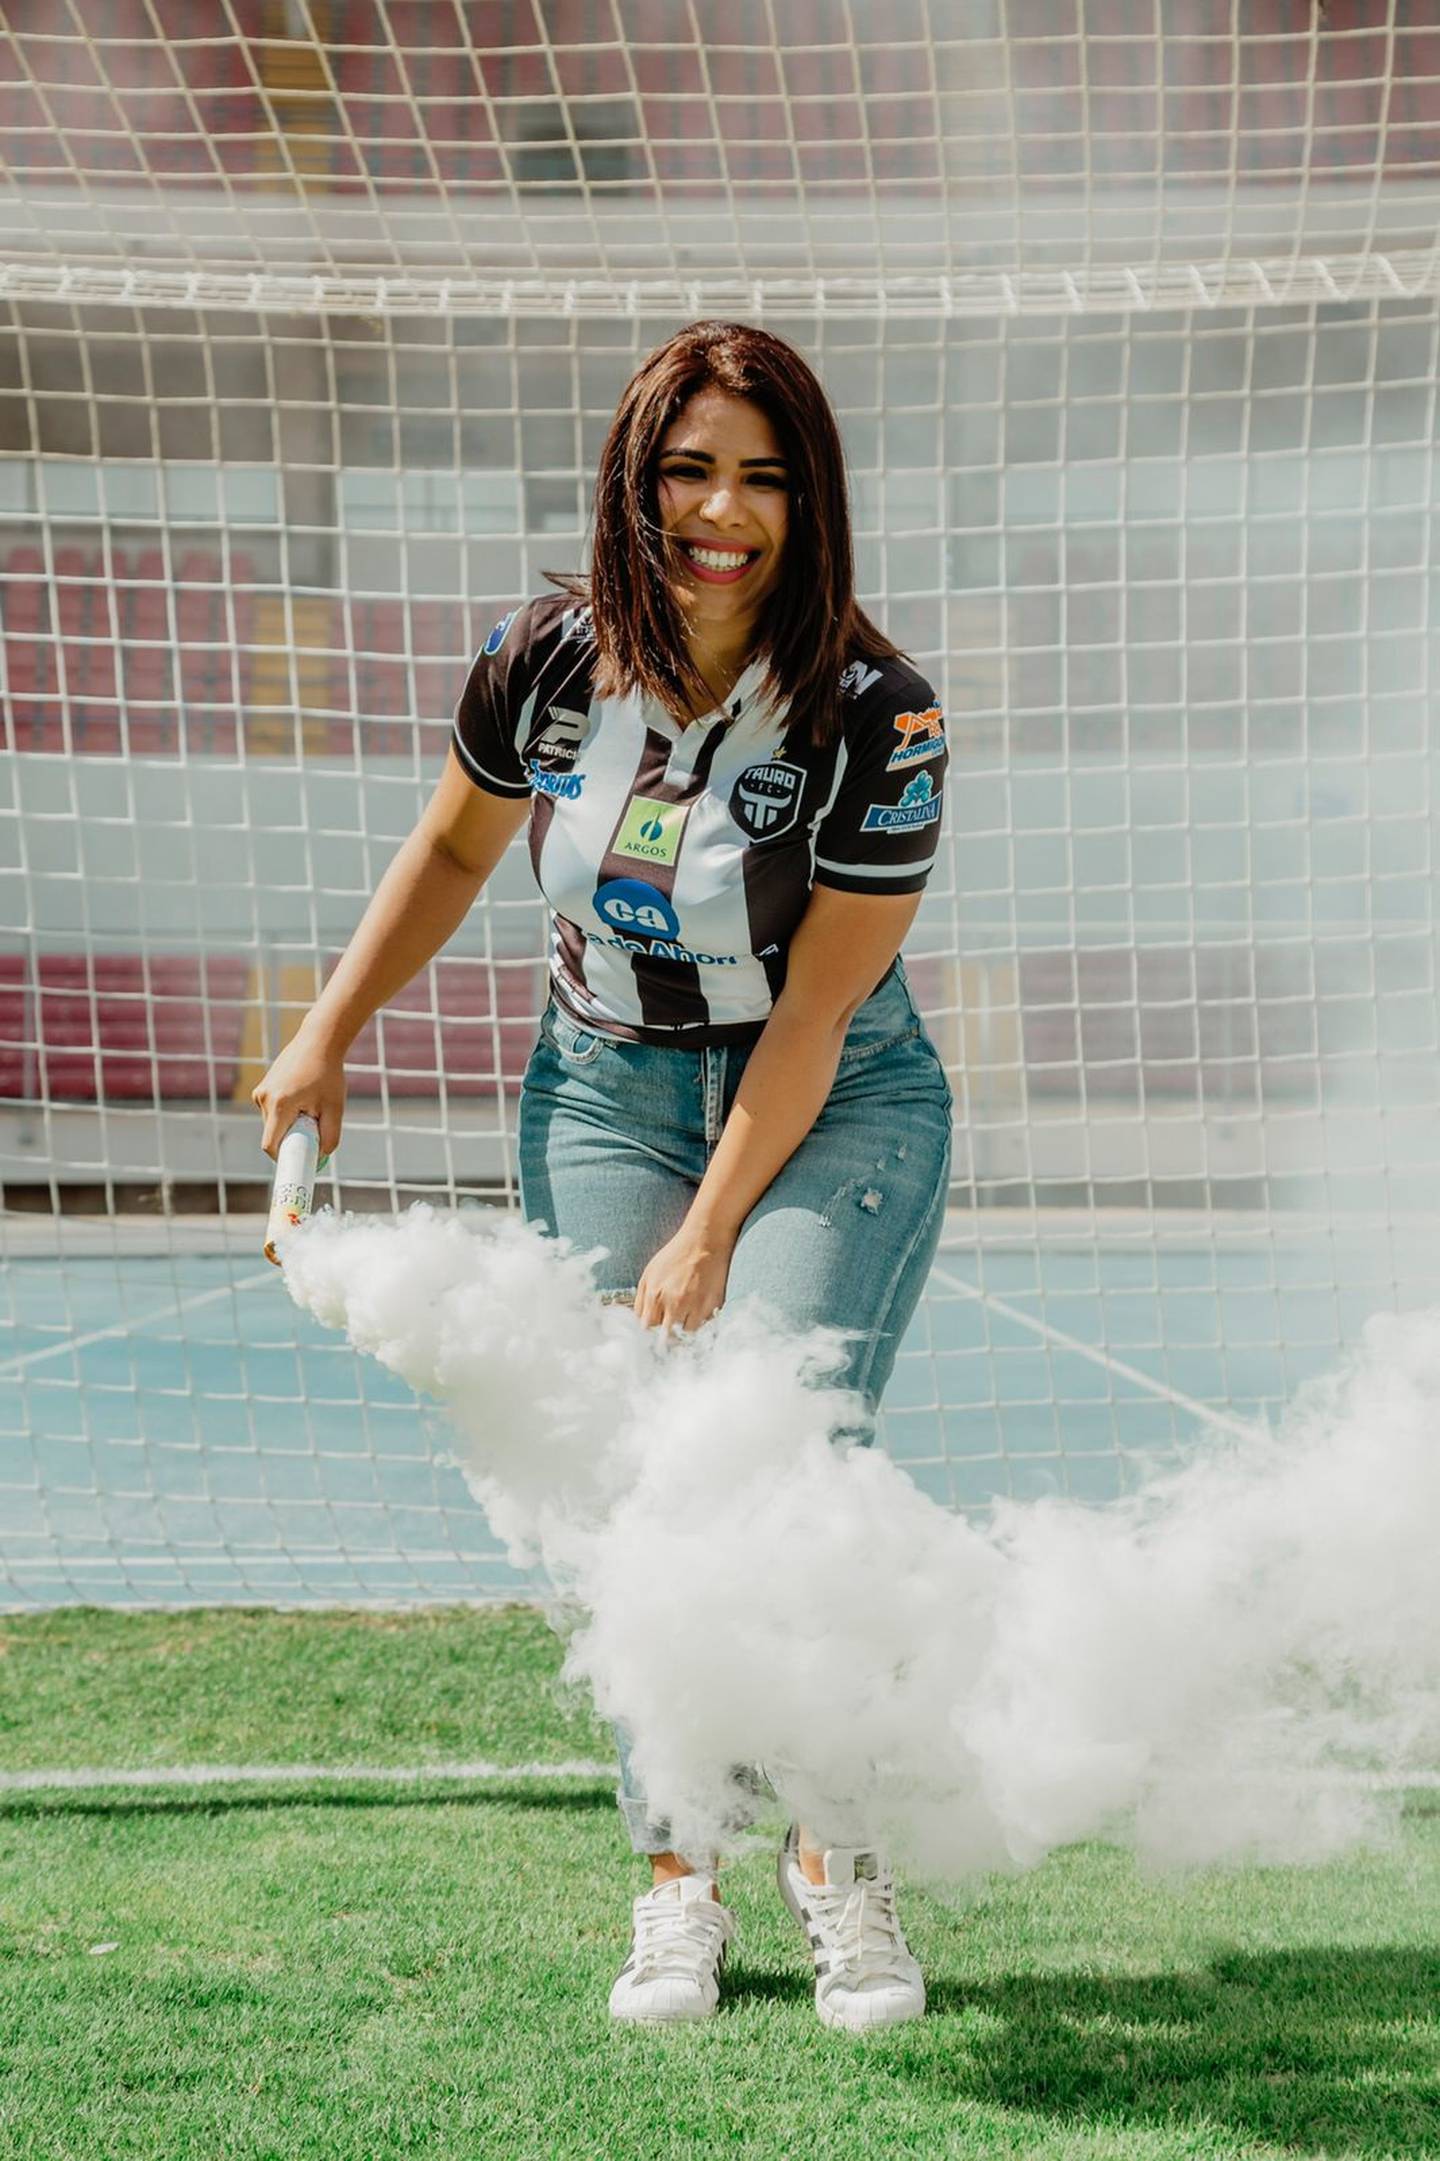 Irma Batista, aficionada panameña que vendrá a Costa Rica para el juego CR - Panamá. Cortesía.